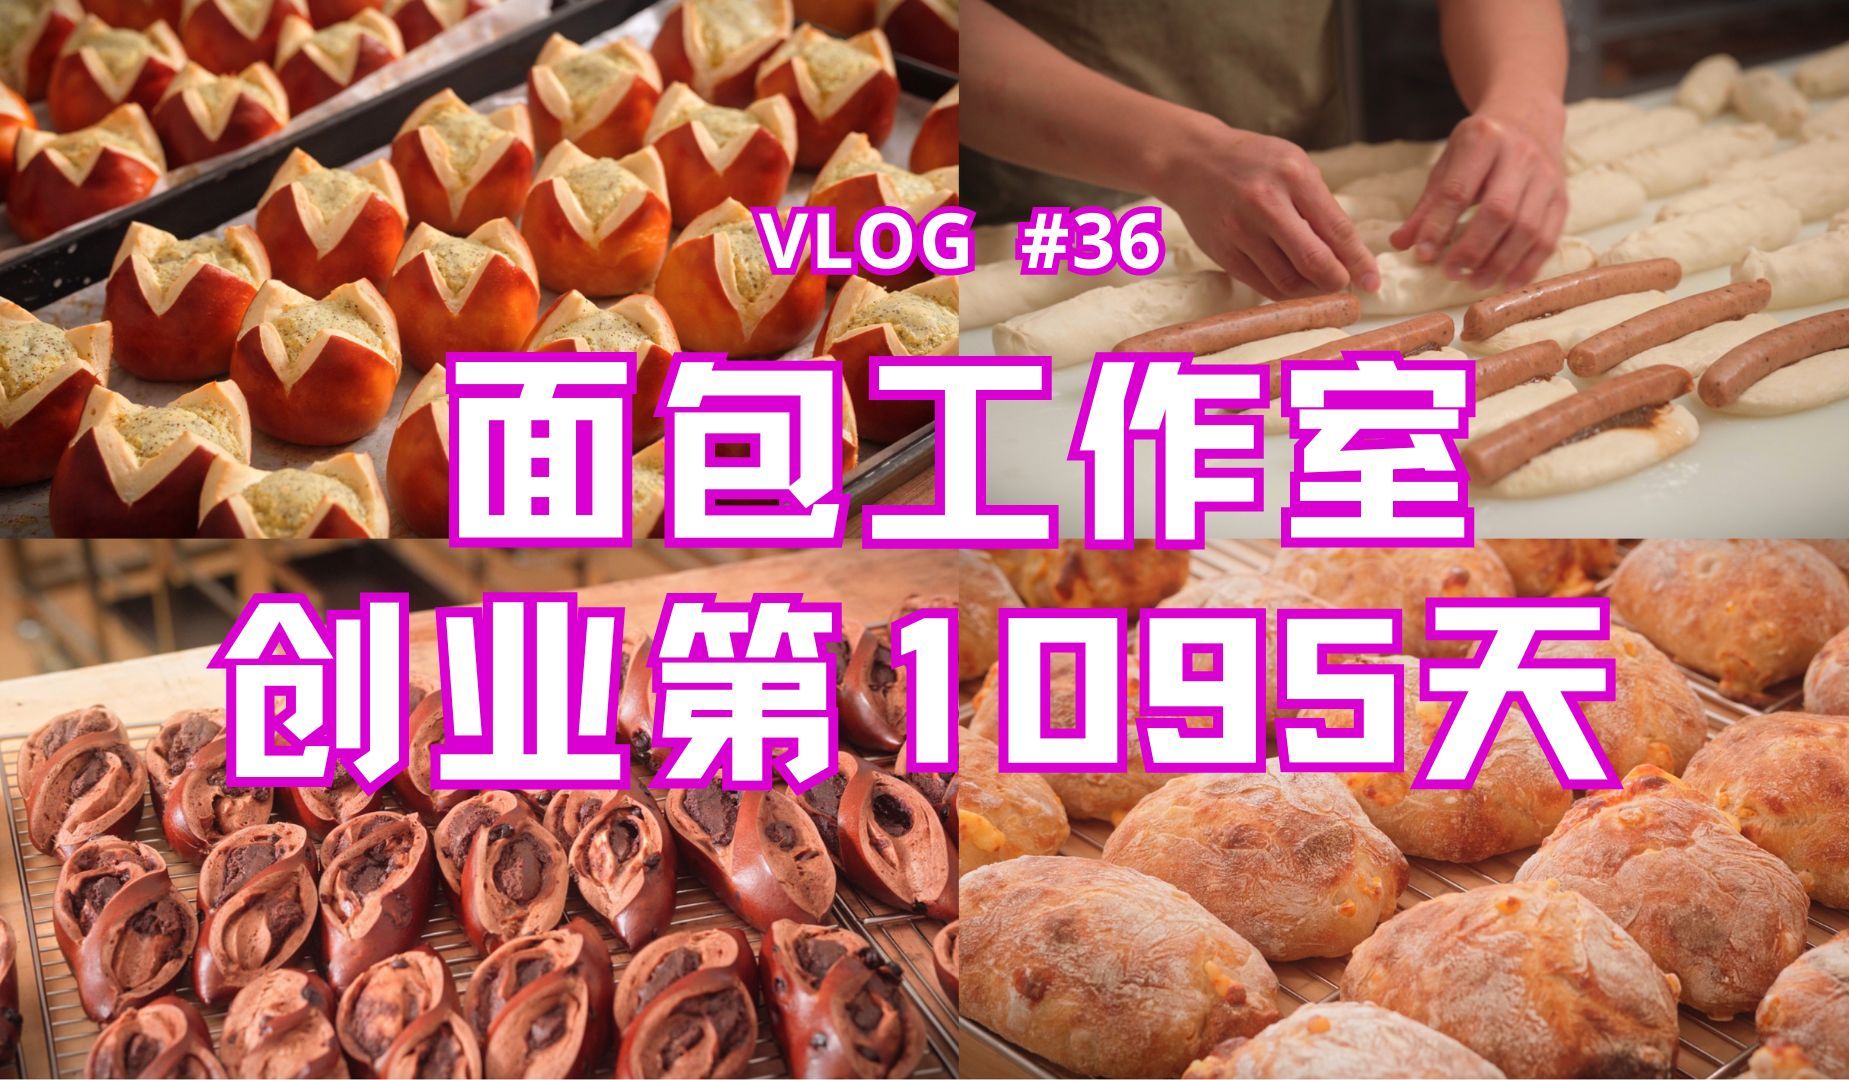 24岁面包师创业第1095天 一起来云撸包吧~ | 面包vlog#36